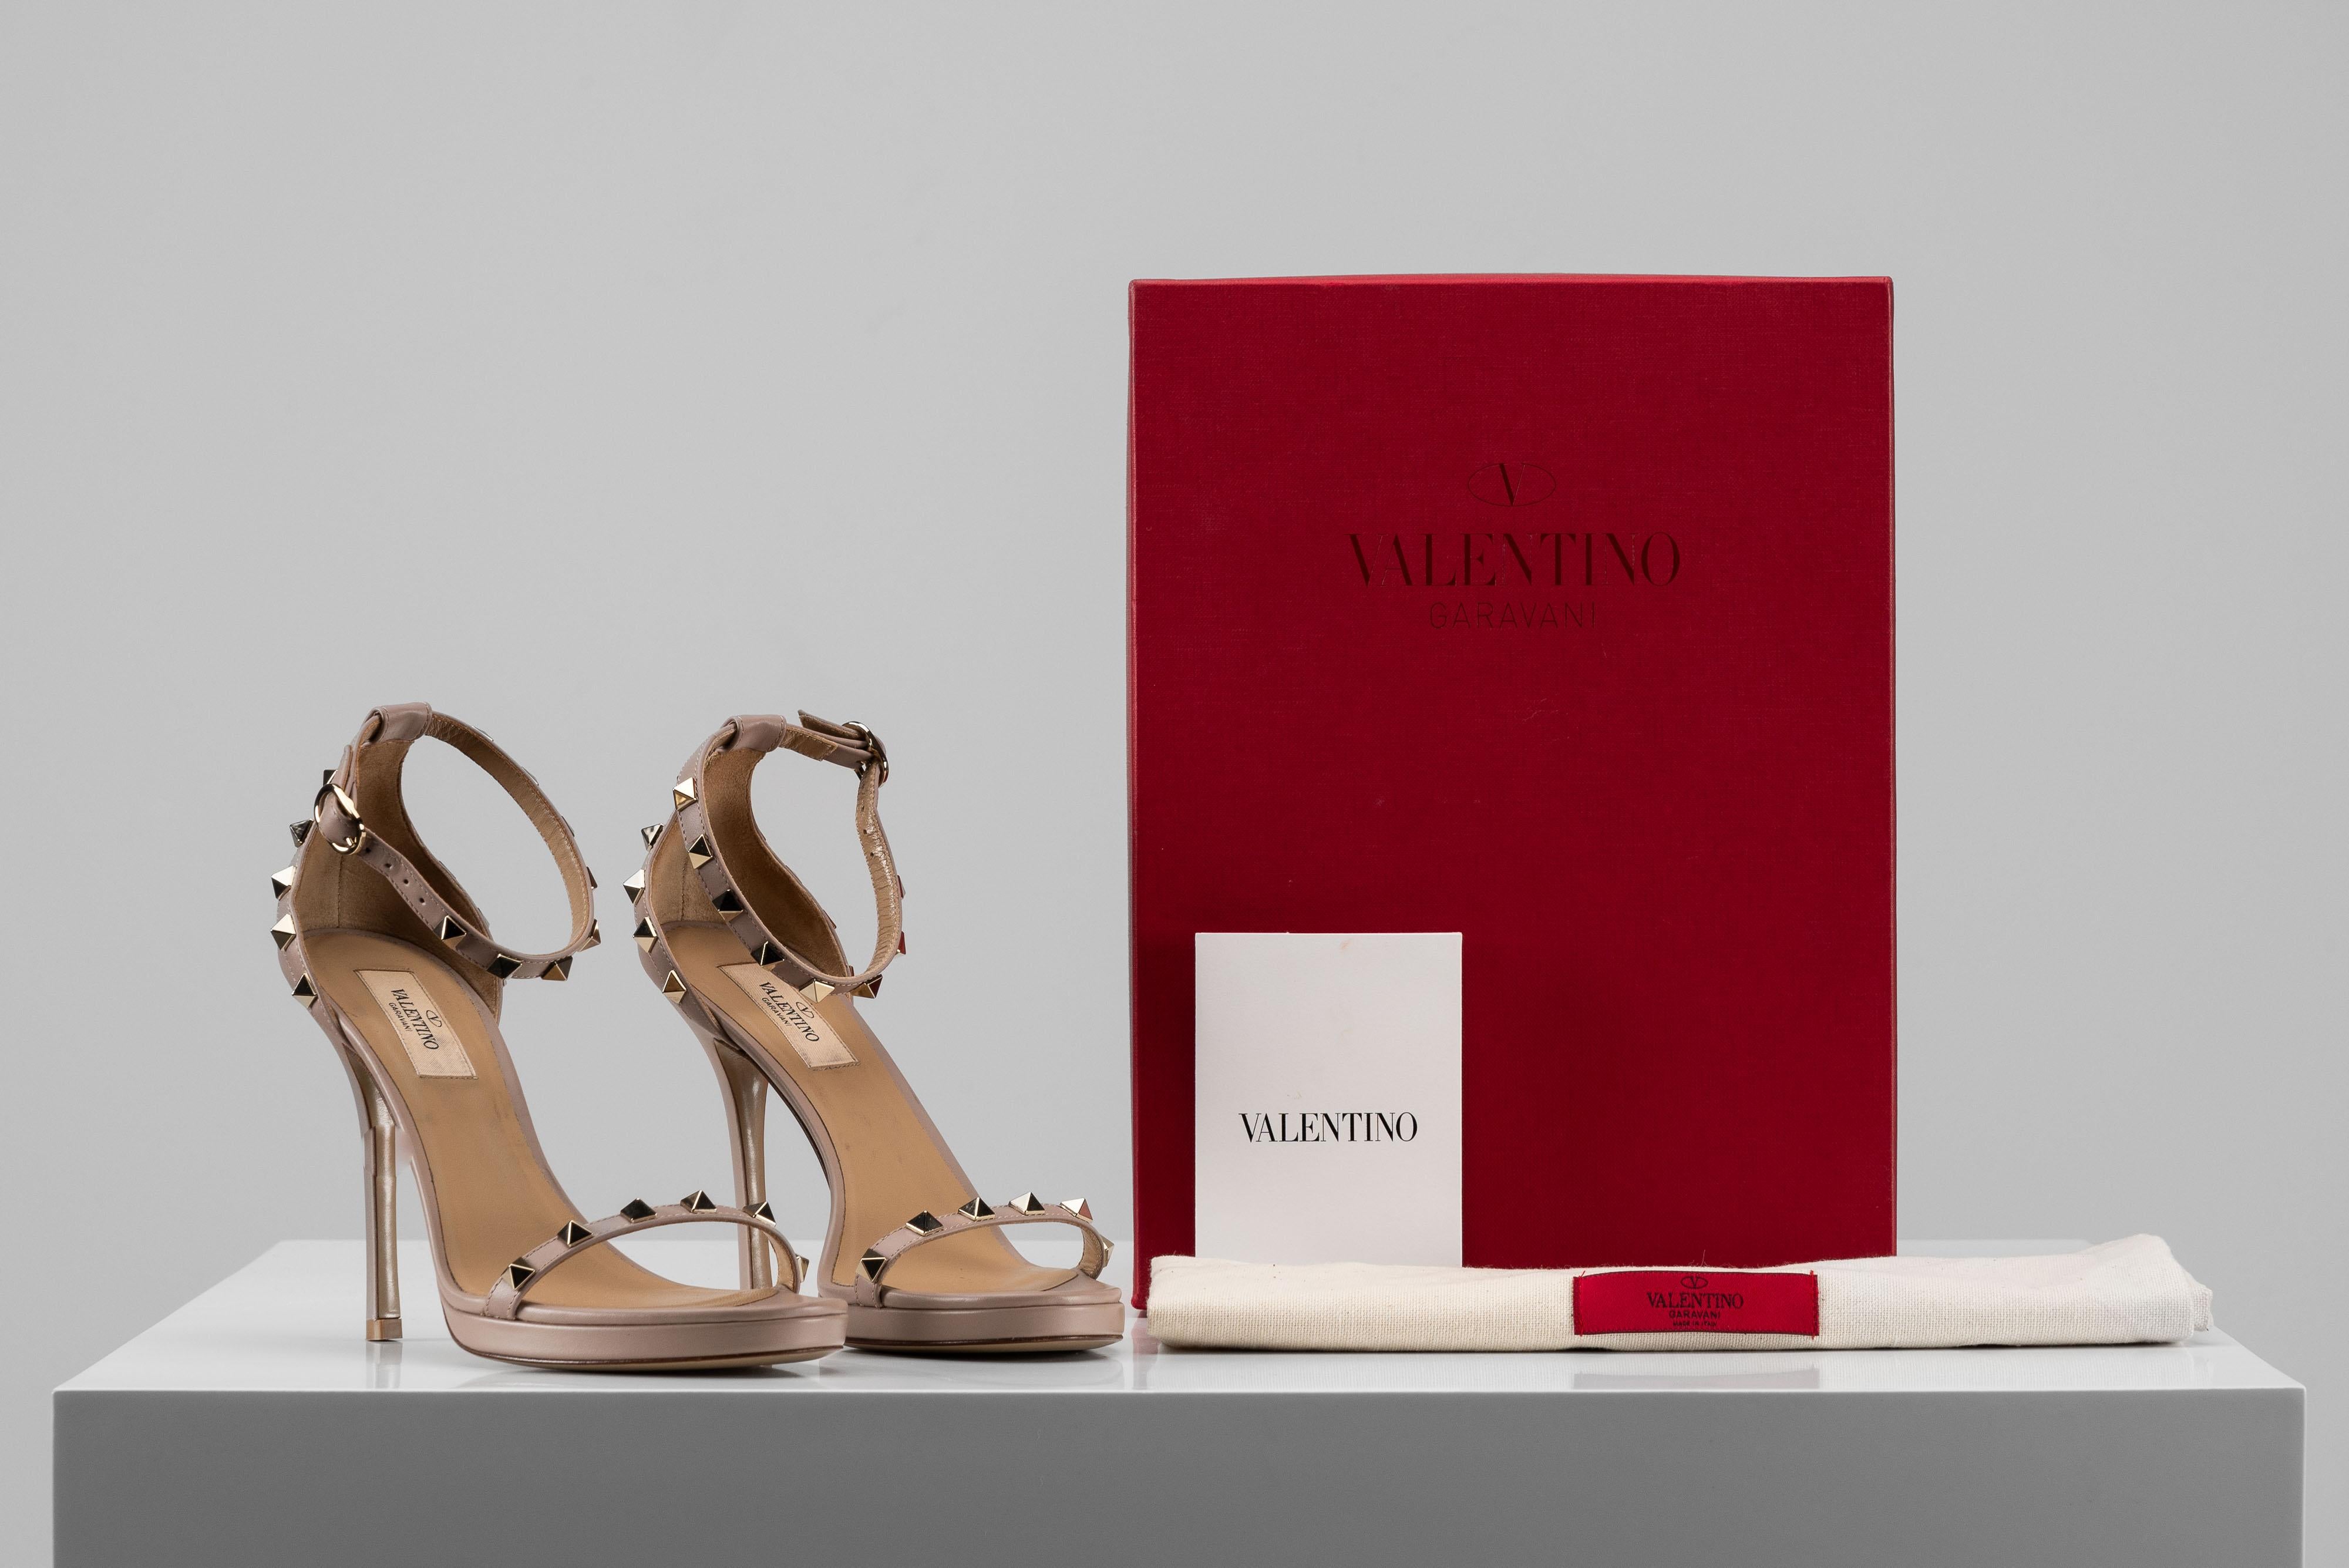 Aus der Kollektion von SAVINETI bieten wir dieses Paar Valentino Ruckstud Heels an:
- Marke: Valentino 
- Modell: Rockstud Sandale Heels
- Größe: 38 1/2
- Zustand: Sehr gut 
- Jahr: 2020
- Extras: Full-Set (Staubbeutel, Box &